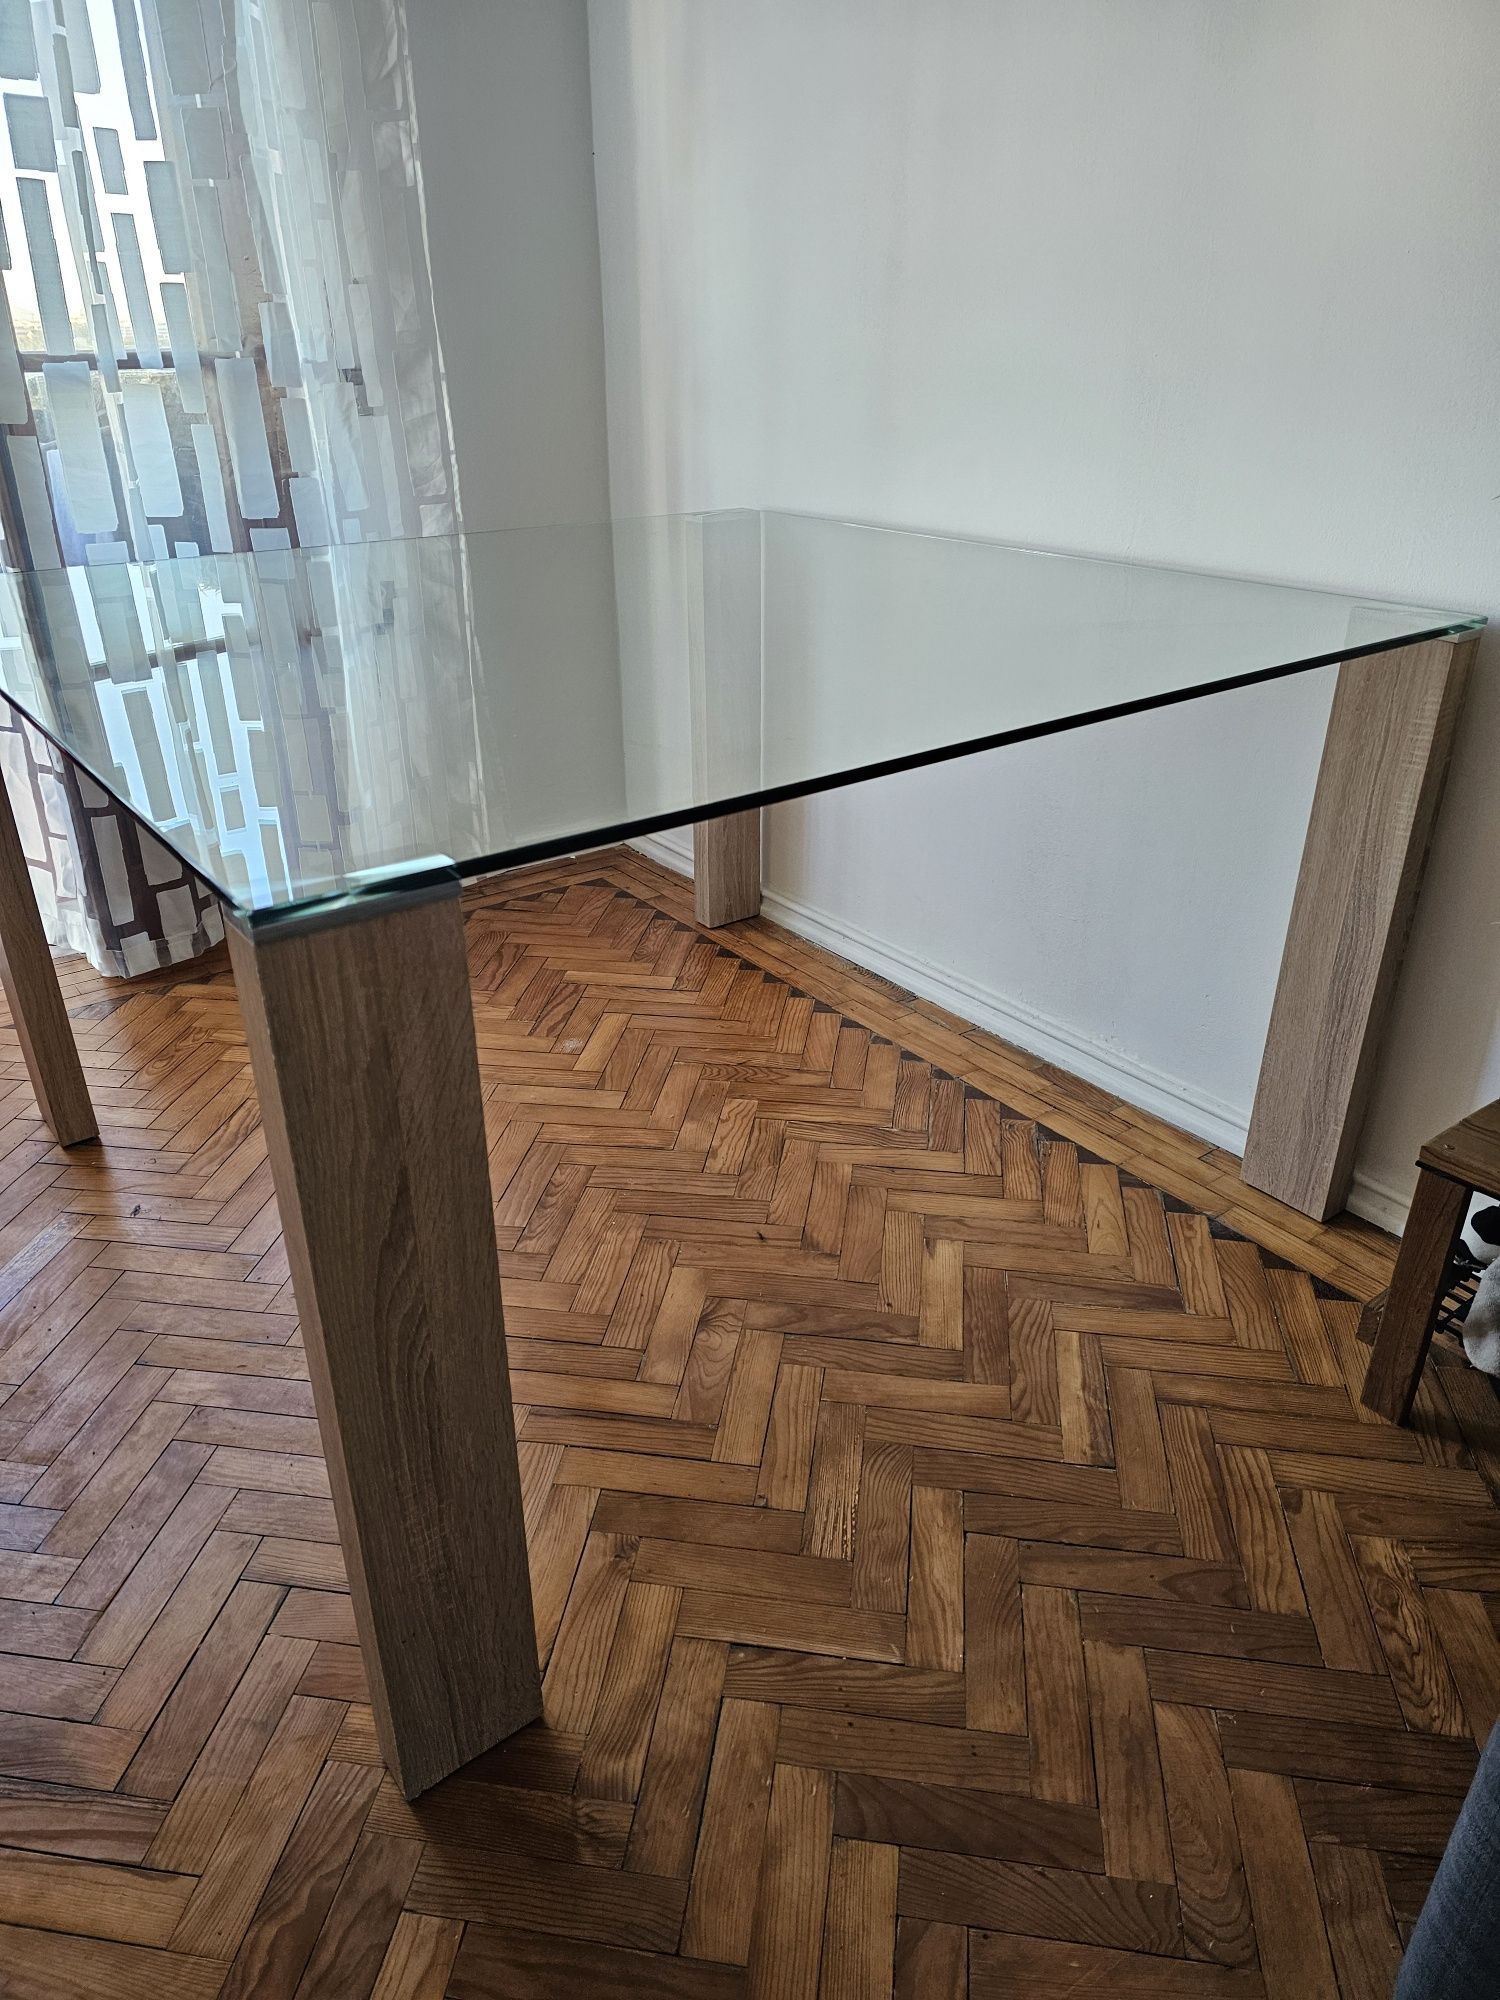 Mesa de vidro 1.30x1.30 como nova